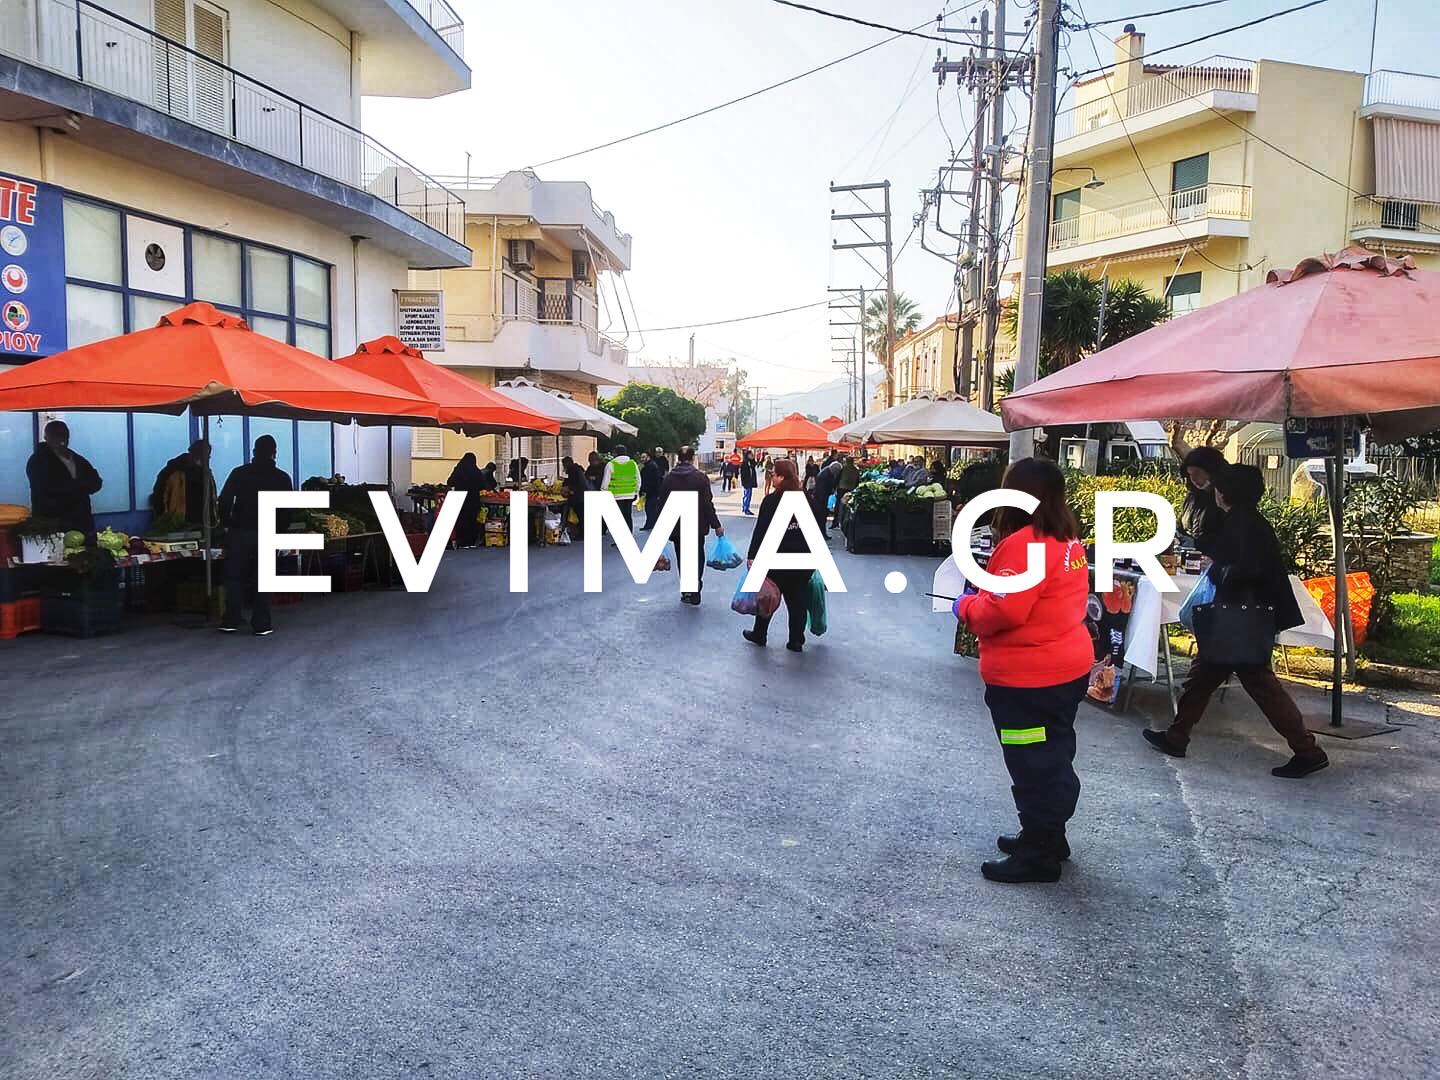 Ρεπορτάζ evima.gr: Οι εικόνες στις λαϊκές αγορές της Εύβοιας πιστοποιούν το πρόβλημα στην ακρίβεια